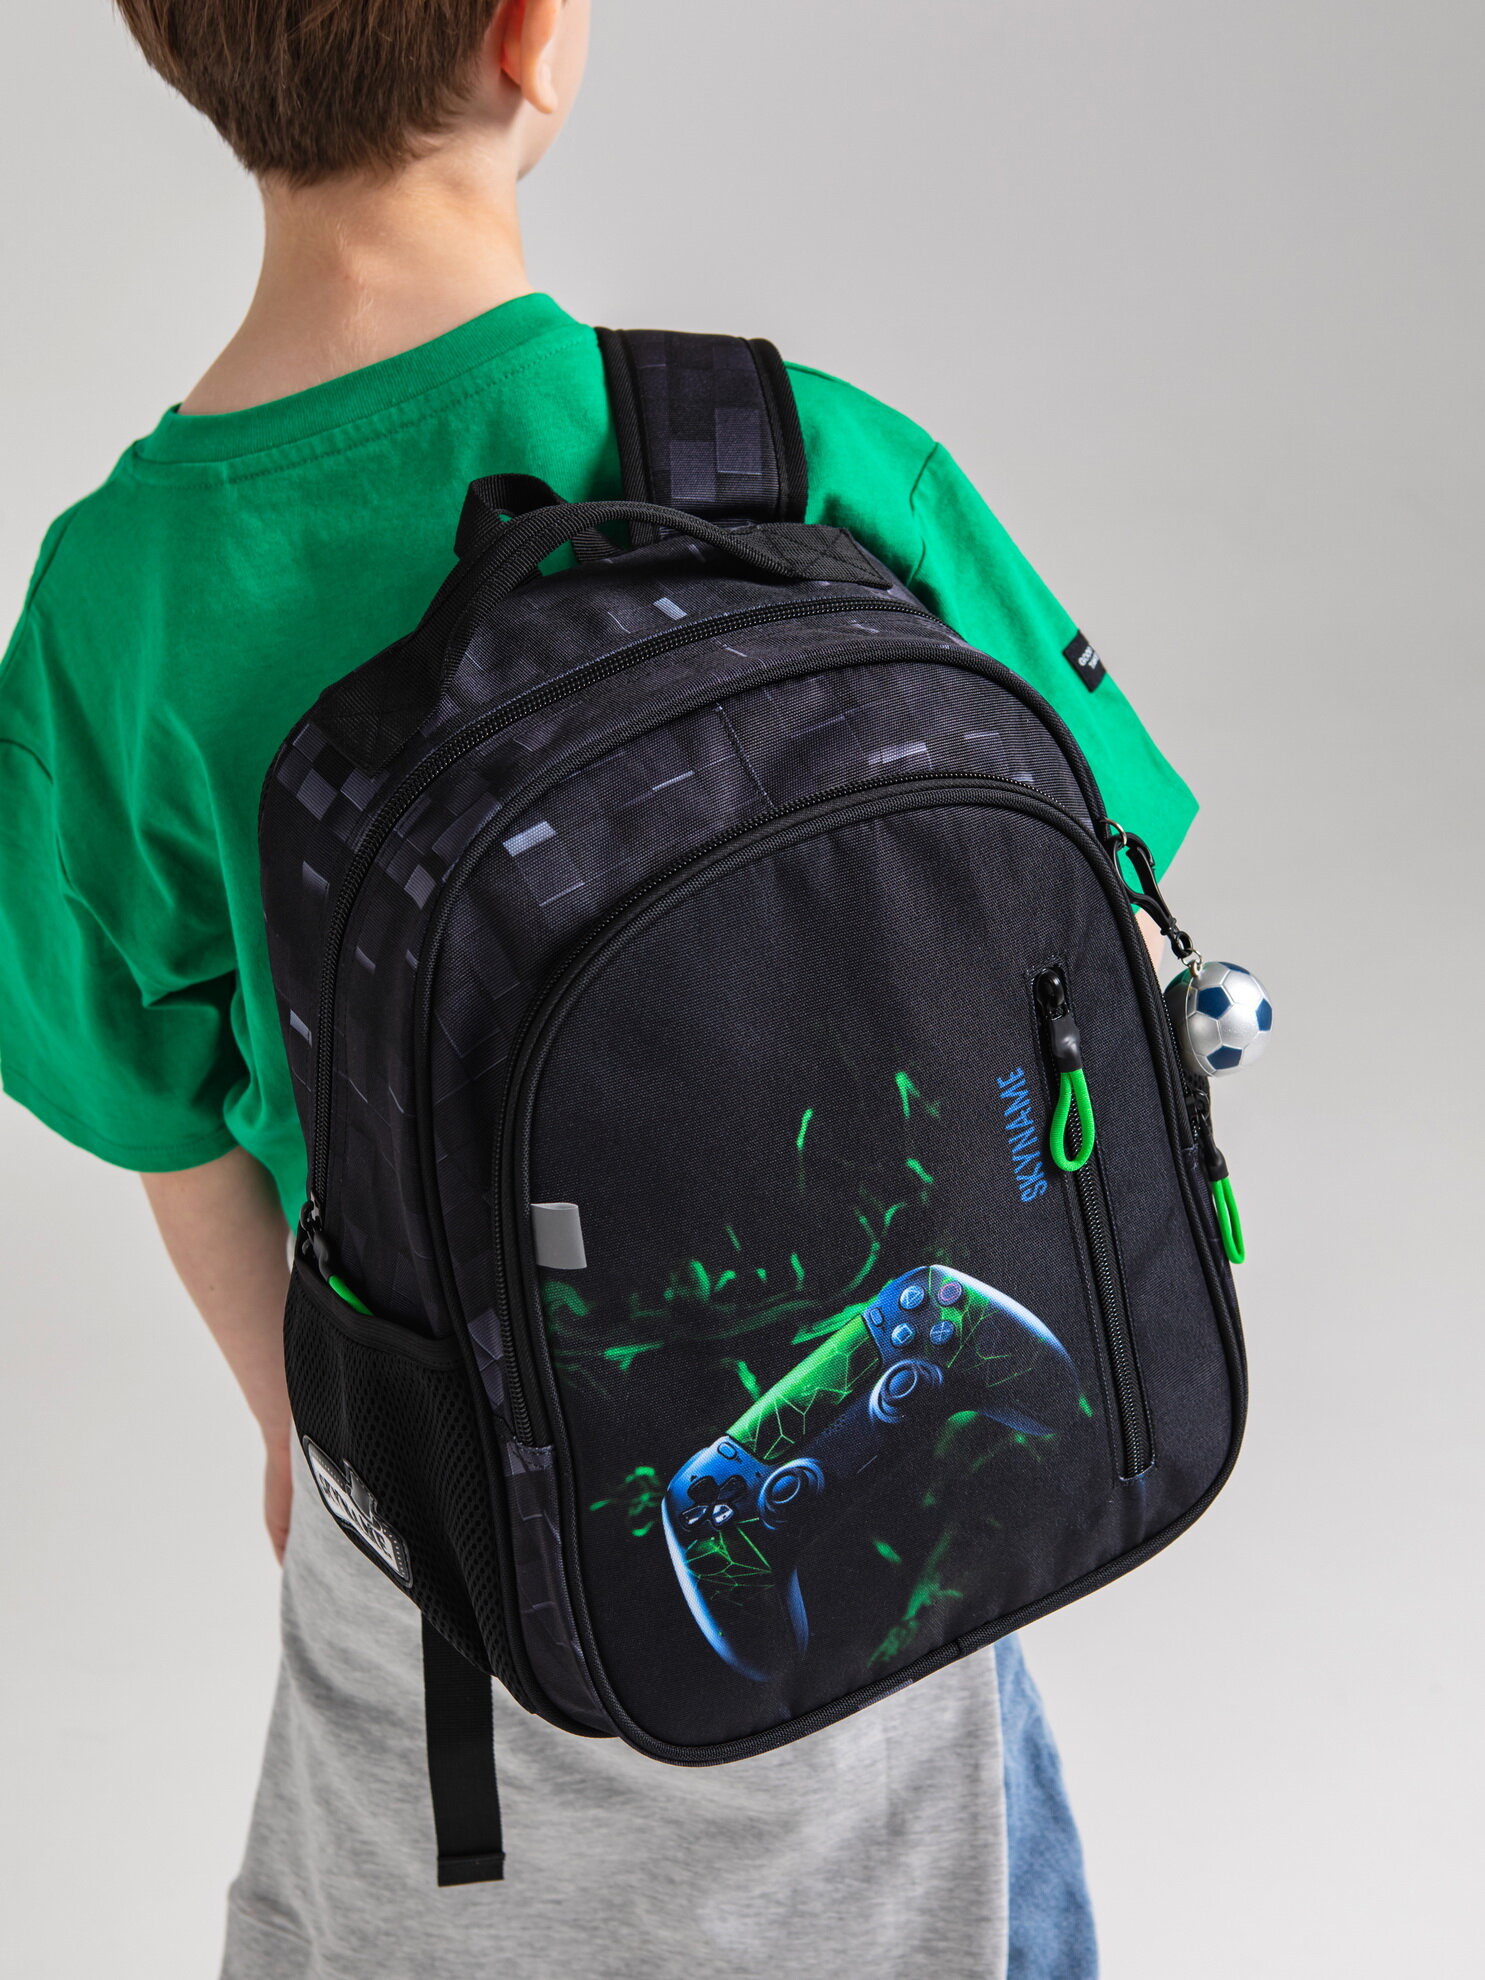 Рюкзак школьный для мальчика 17 л для 1-4 класса с анатомической спинкой SkyName (СкайНейм), с мячиком